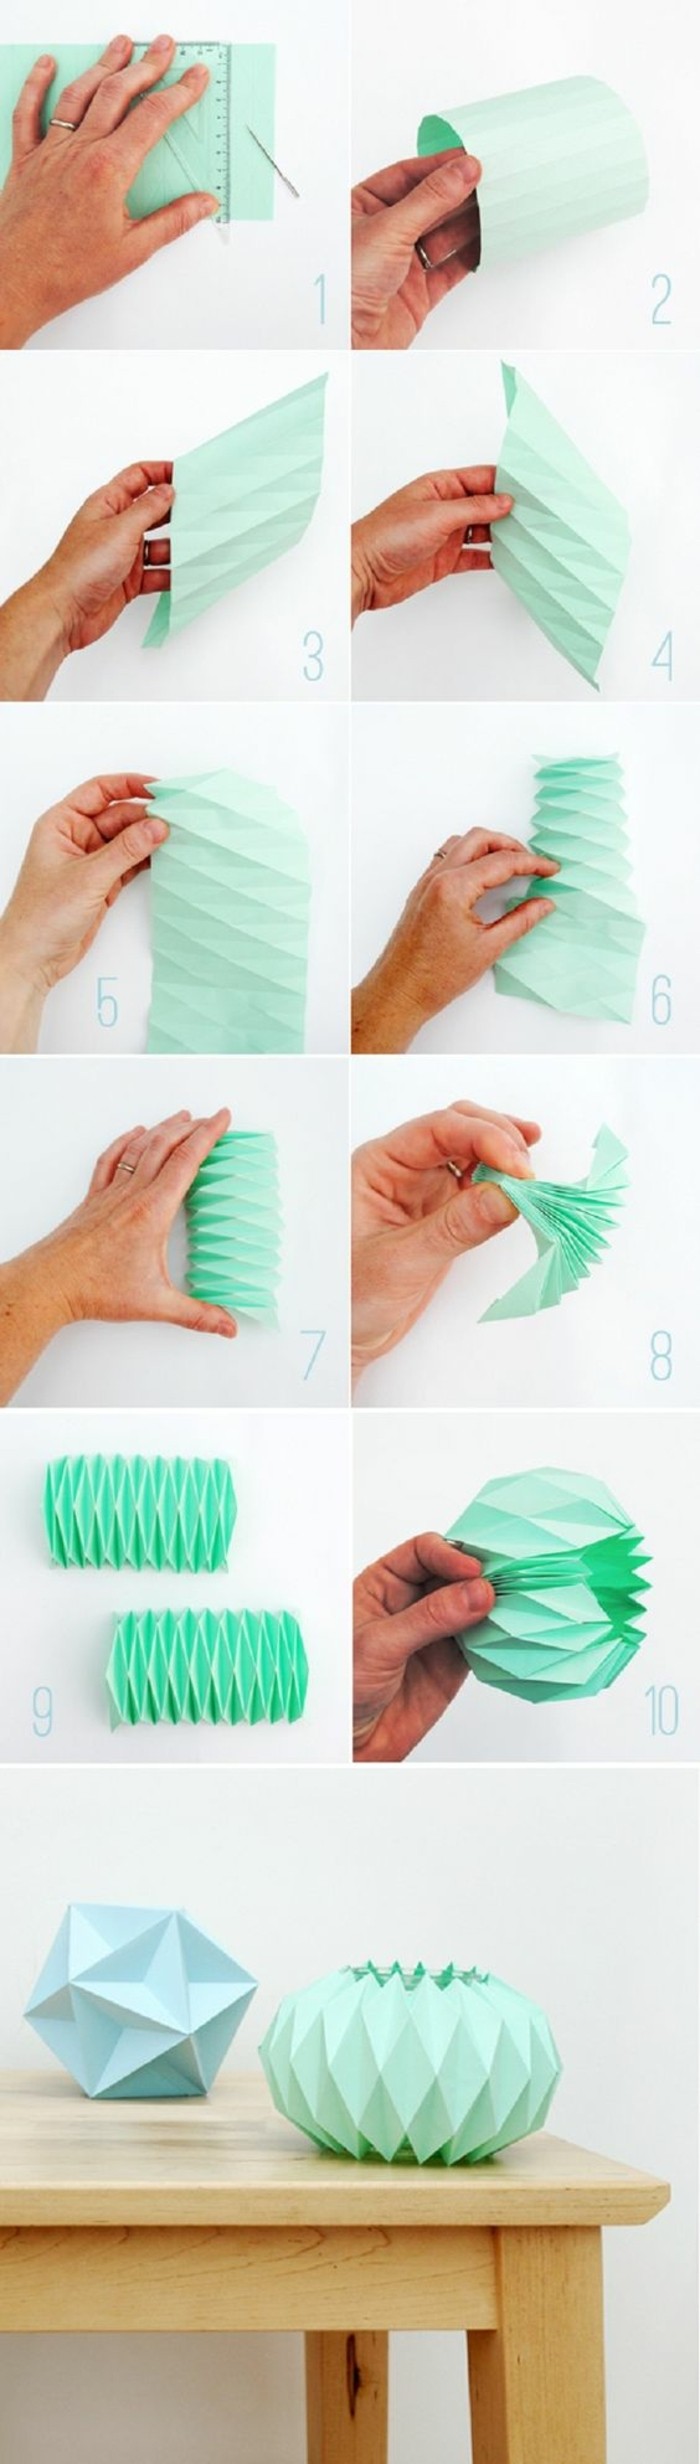 00-deco-mariage-origami-en-papier-vert-menth-boule-chinoise-en-papier